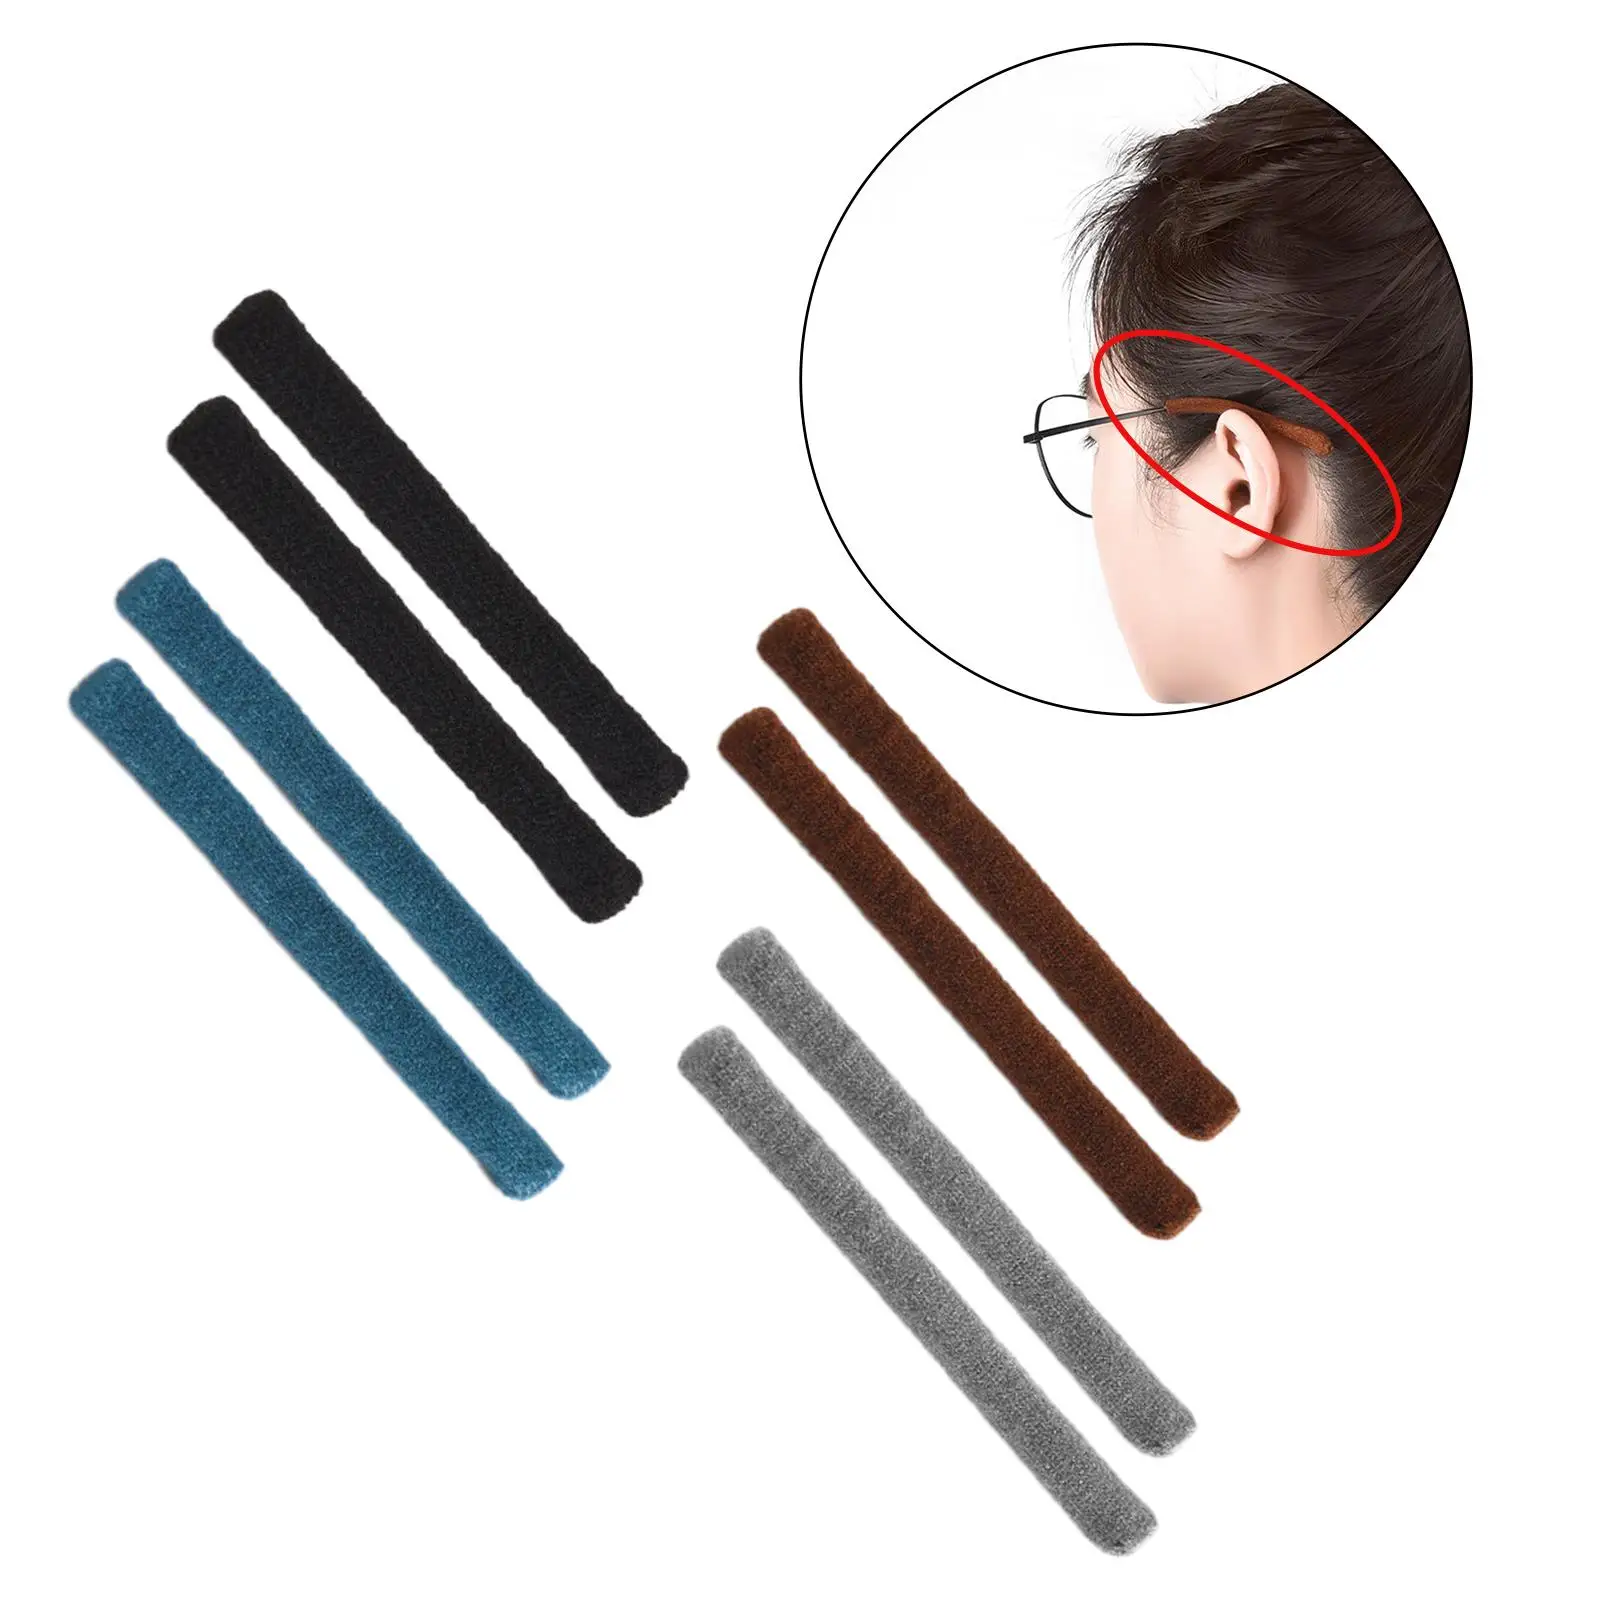 2Pcs Eyeglasses Temple Tips Sleeve Retainer Anti Slip Soft Eyeglasses Ear Grips for Spectacle Eyewear Reading Glasses Sunglasses